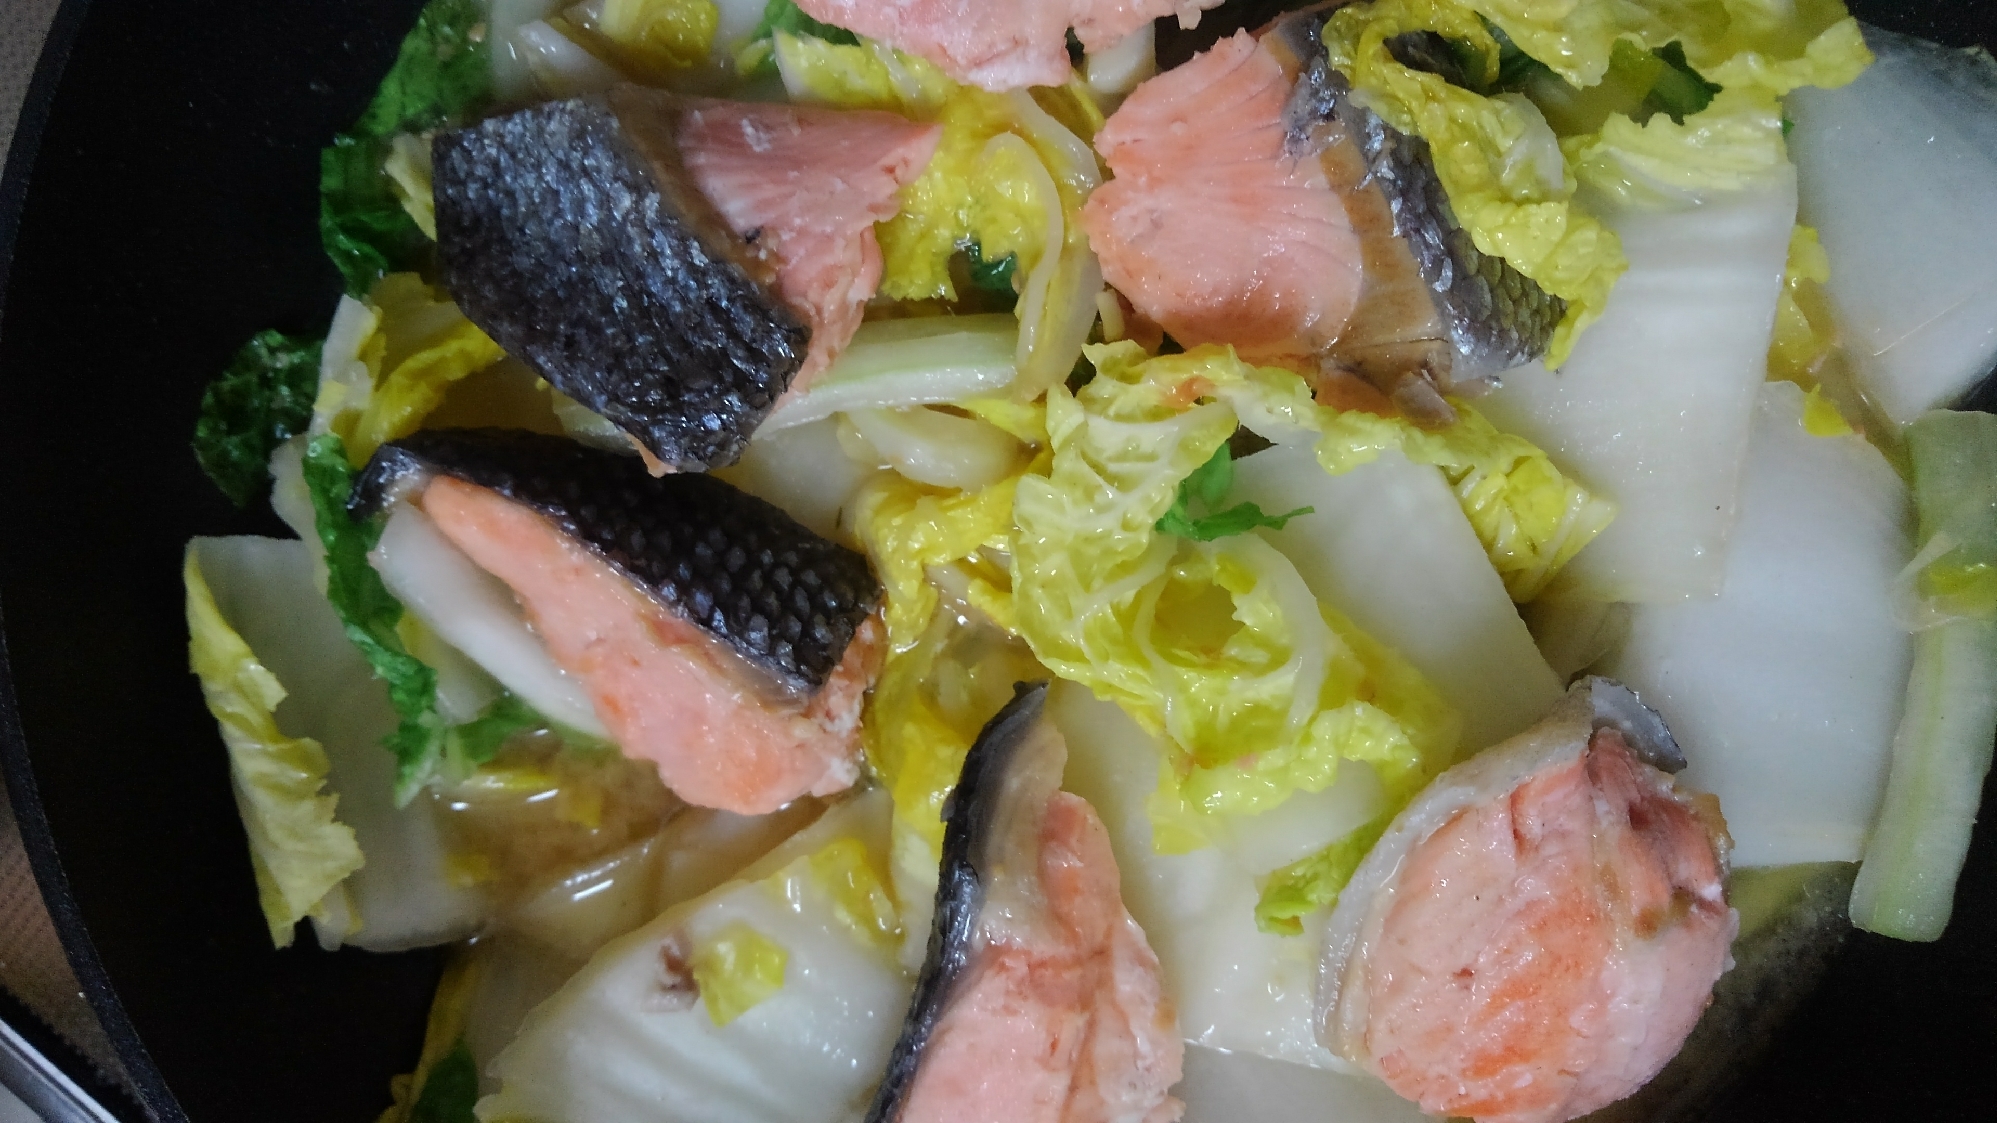 鮭と白菜の味噌バター煮、ちゃんちゃん焼き風